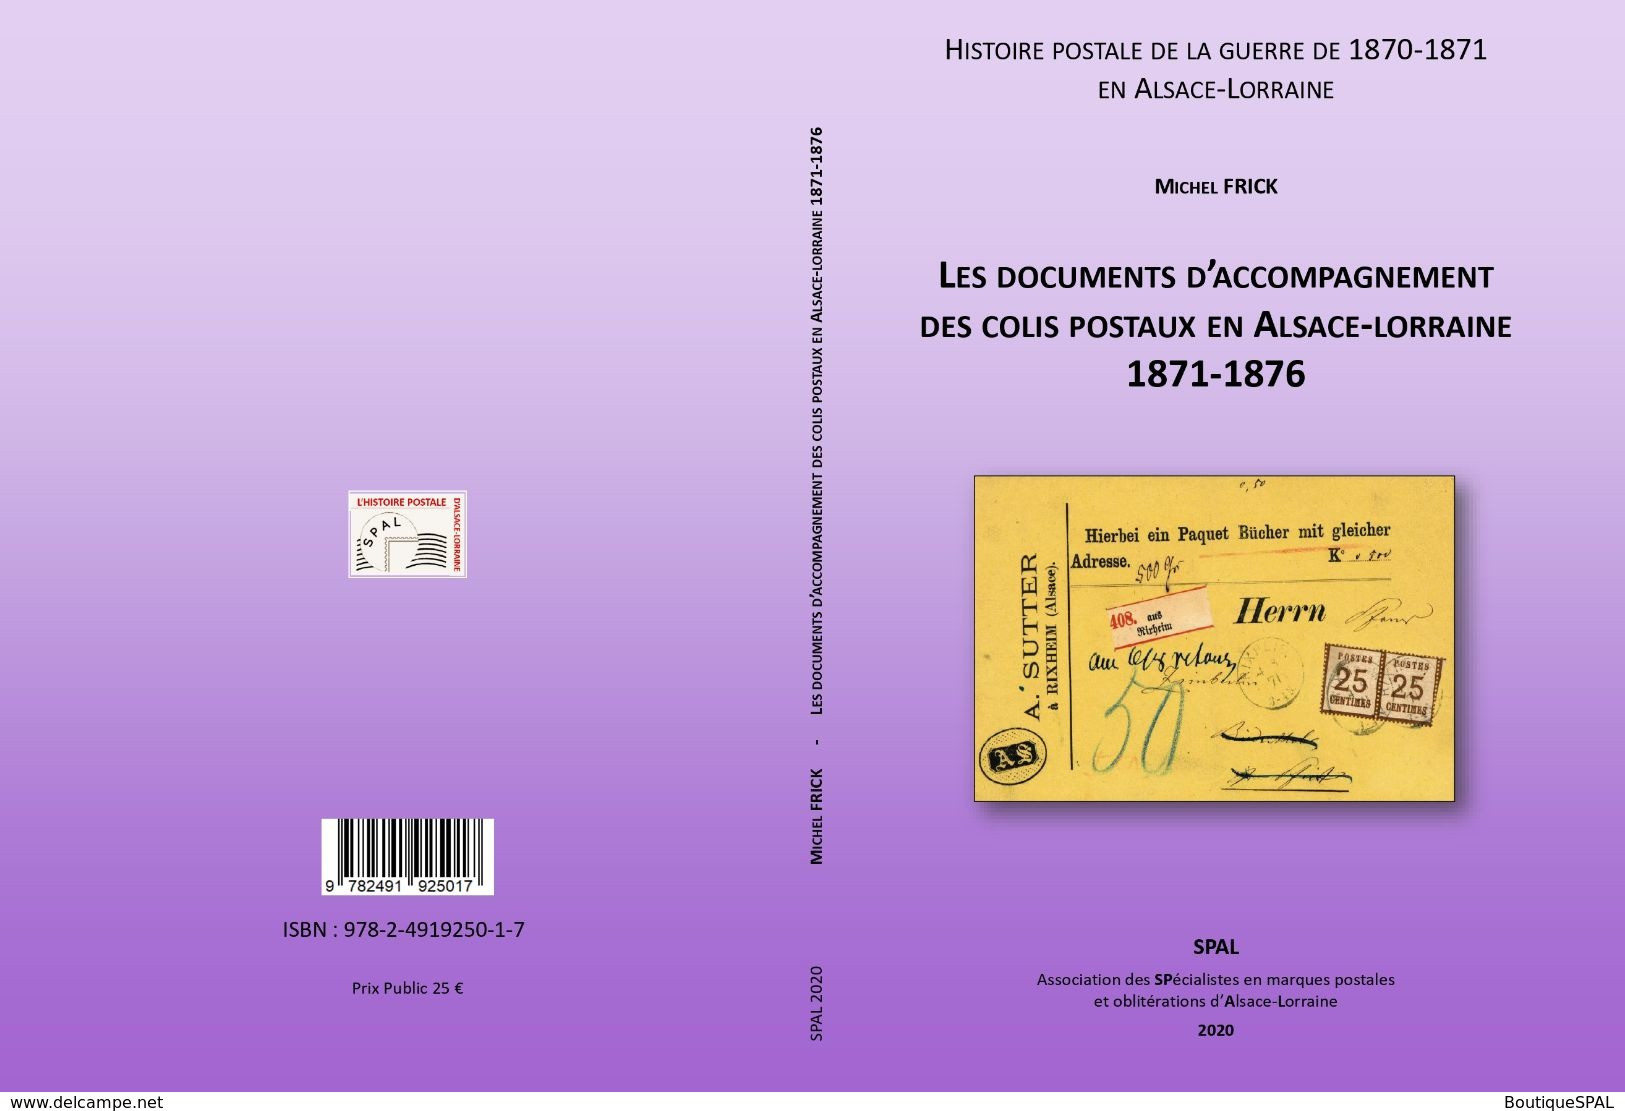 Les Documents D'accompagnement Des Colis Postaux D'Alsace-Lorraine 1871-1876 - Elsass Lothringen - SPAL 2020 - Poste Militaire & Histoire Postale